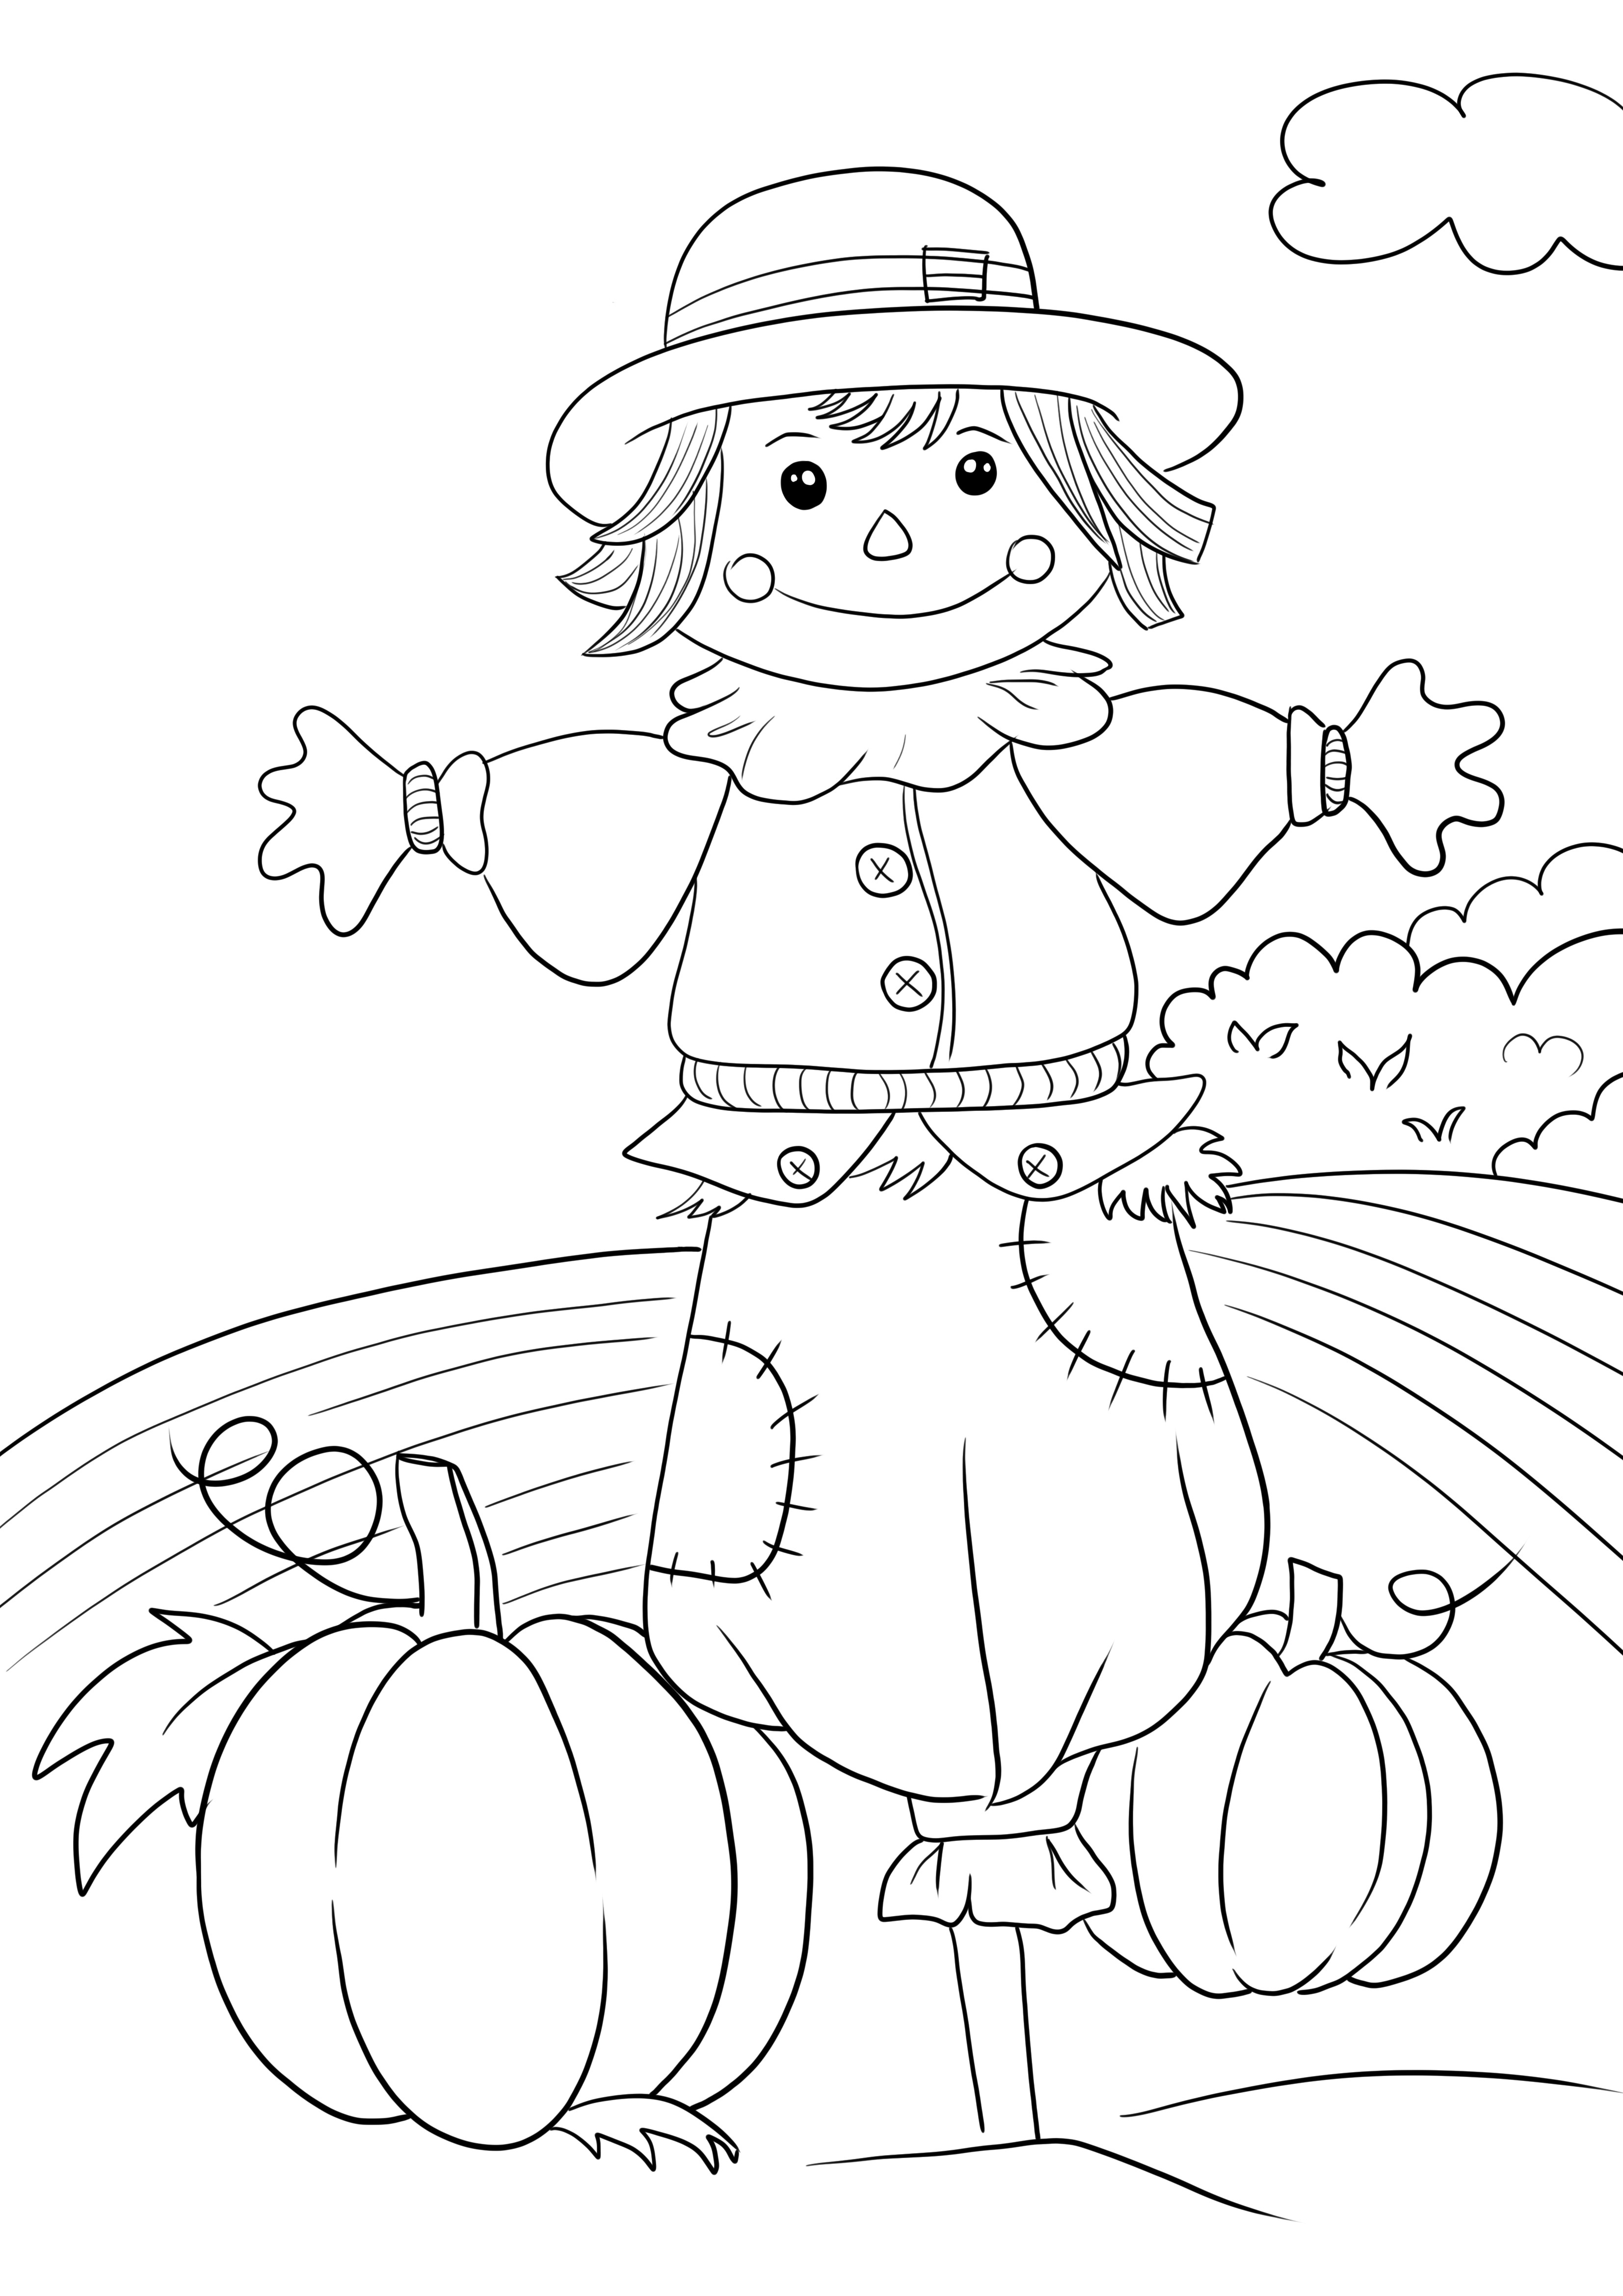 Cena de outono e imagem para colorir e imprimir espantalho para crianças gratuitamente